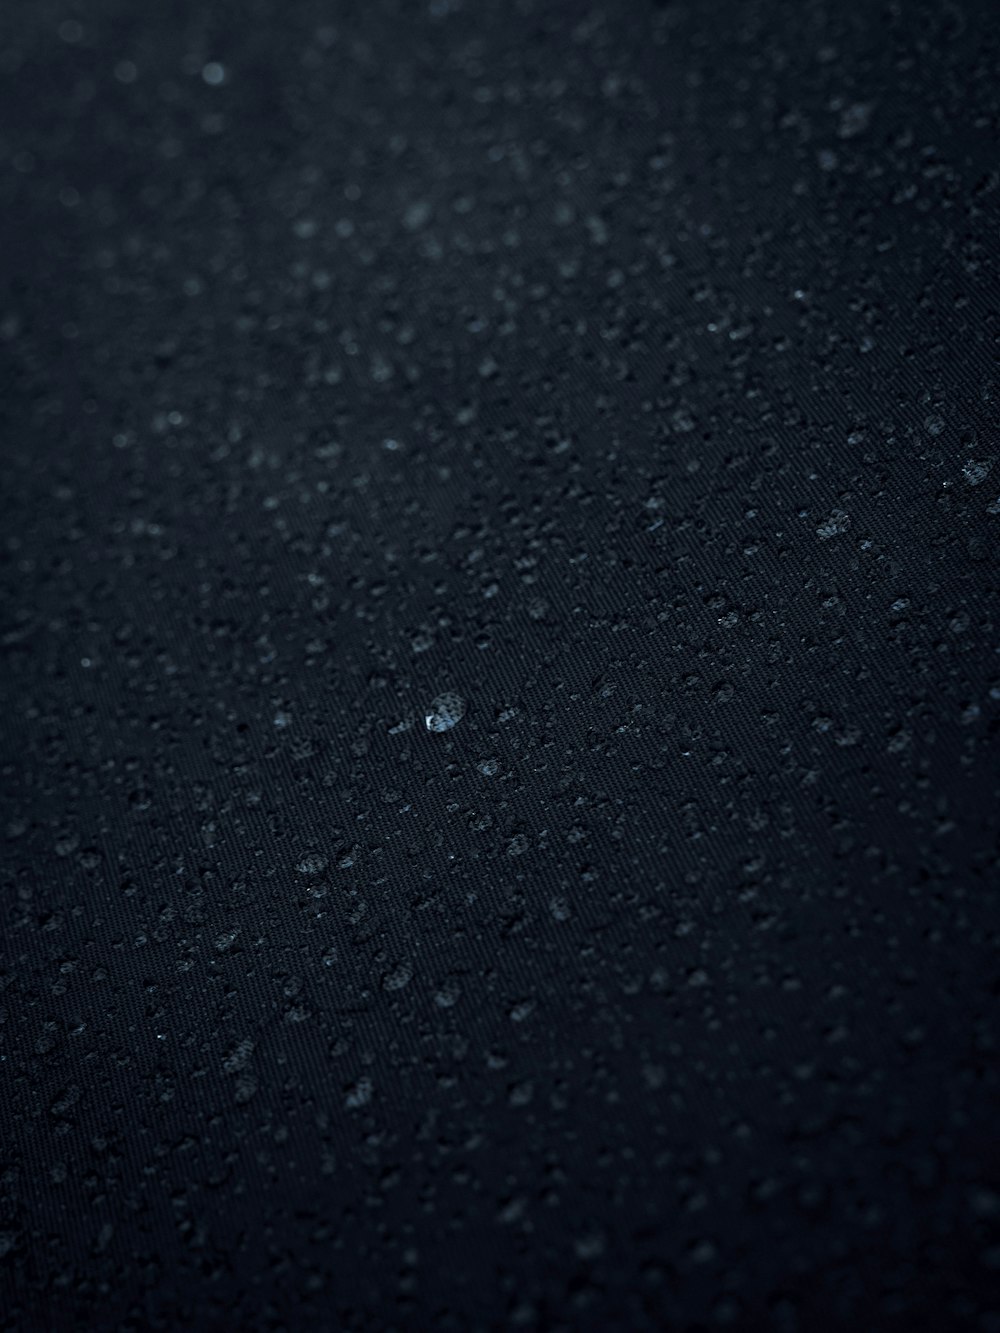 un primer plano de gotas de agua sobre una superficie negra